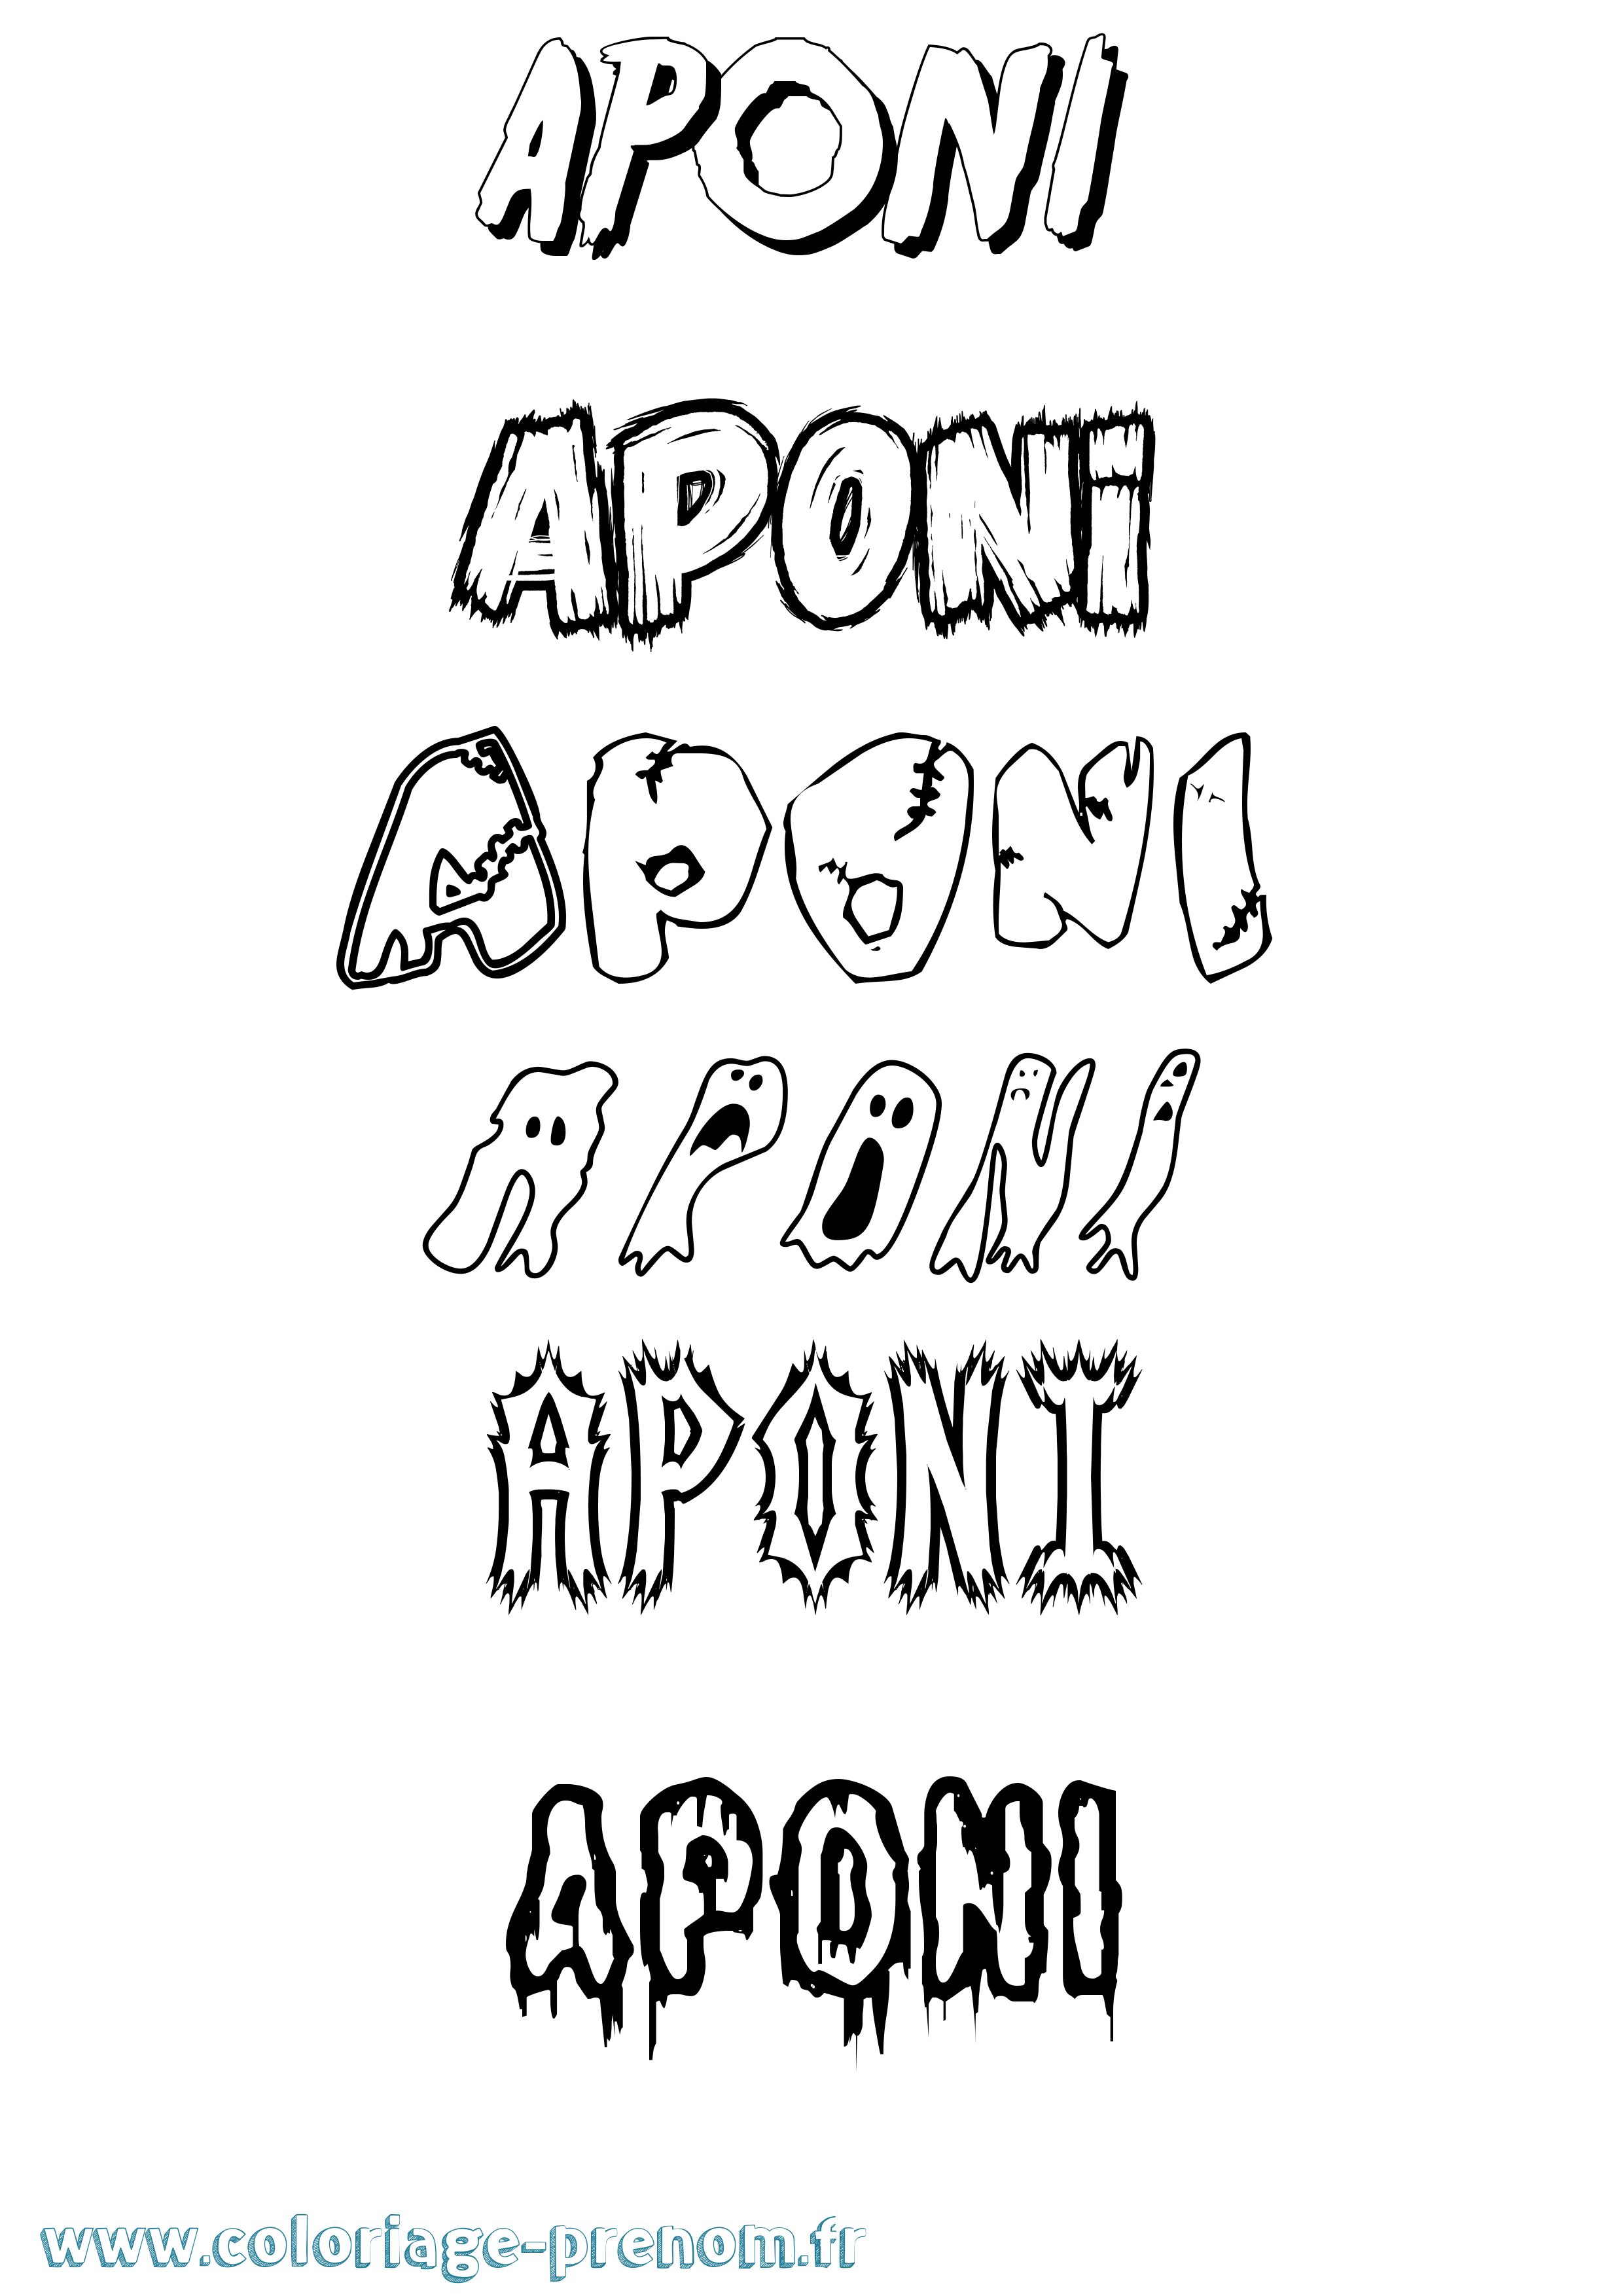 Coloriage prénom Aponi Frisson